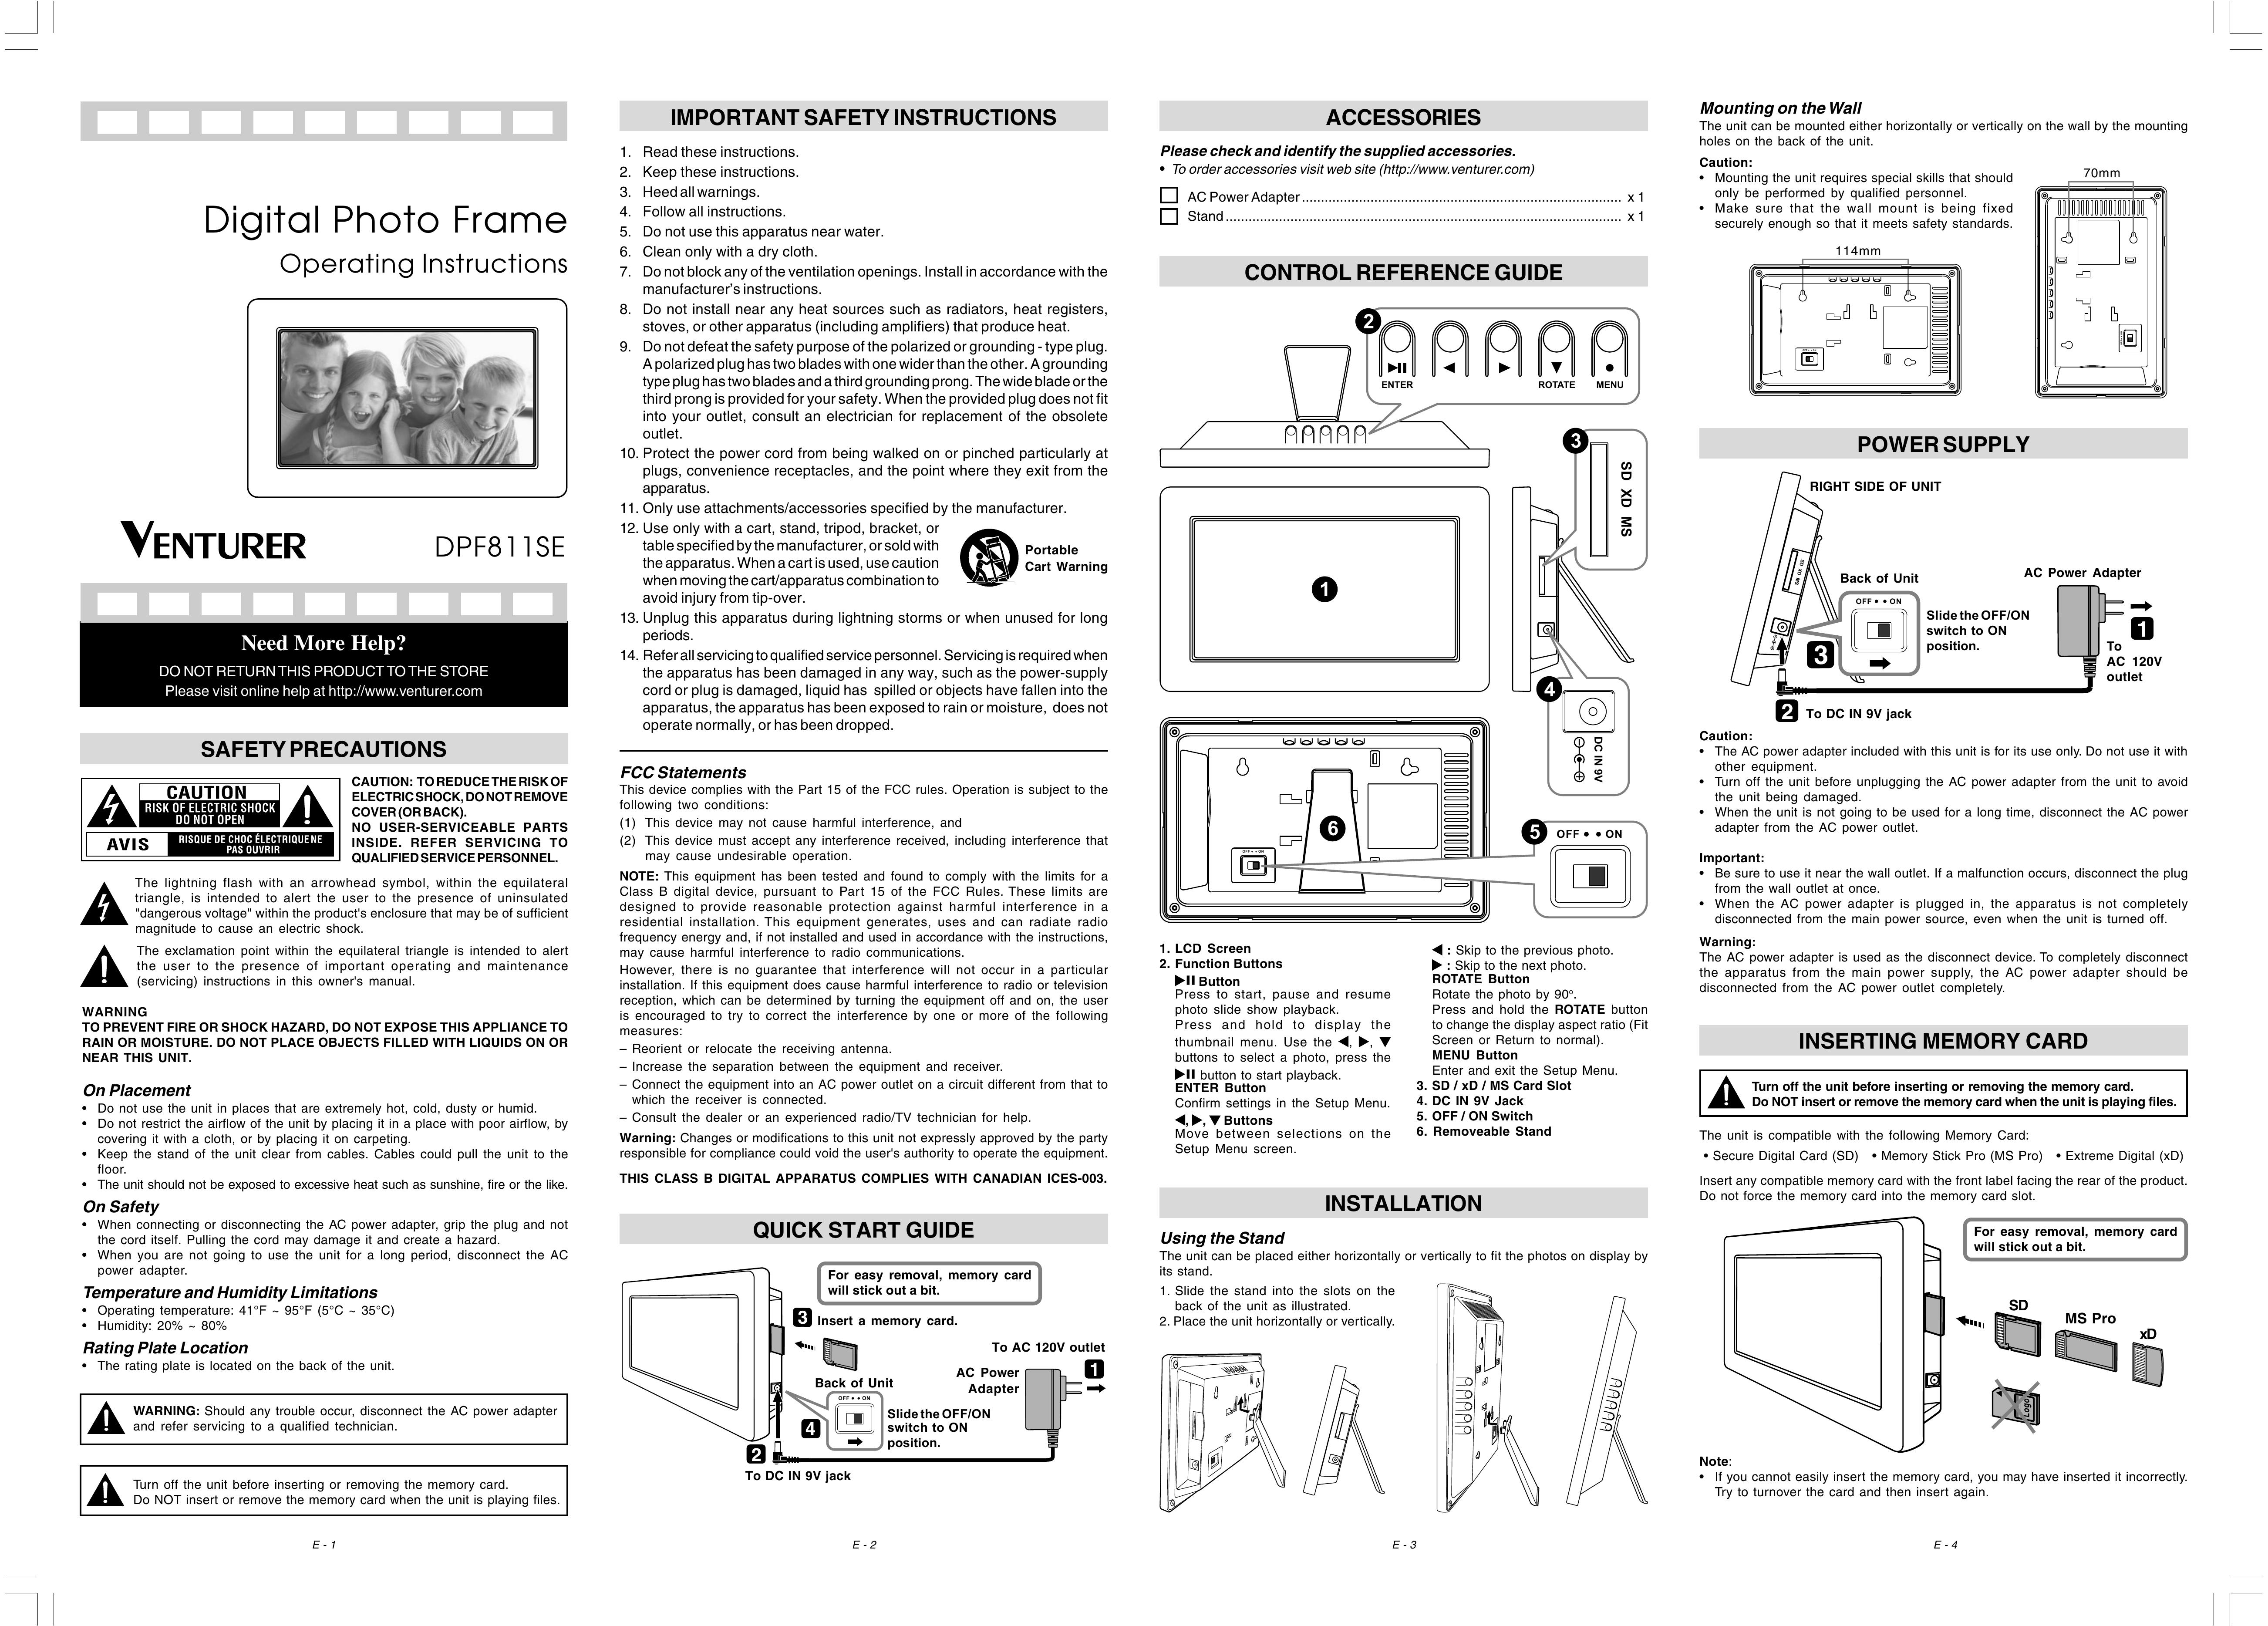 Venturer DPF811SE Digital Photo Frame User Manual